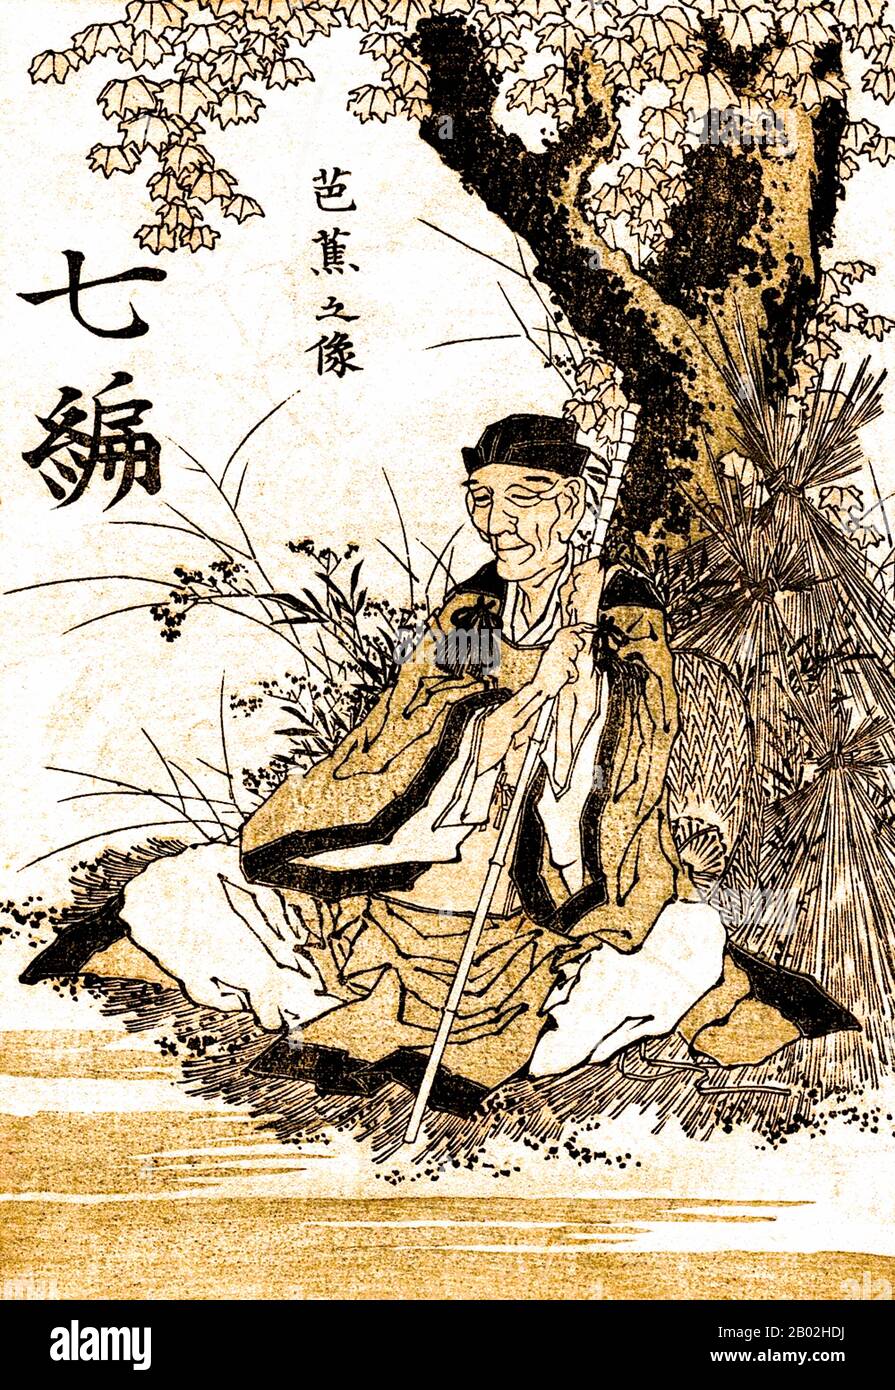 Matsuo Basho (1644 - 28. November 1694) war der bekannteste Dichter der Edo-Zeit in Japan. Zu seinen Lebenszeit wurde Basho für seine Arbeiten in der kollaborativen Haikai-no-renga-form anerkannt; heute, nach Jahrhunderten des Kommentars, wird er als Meister des kurzen und klaren Haiku anerkannt. Seine Poesie ist international bekannt, und innerhalb Japans werden viele seiner Gedichte auf Denkmälern und traditionellen Stätten vervielfältigt. Basho wurde schon in jungen Jahren in die Dichtkunst eingeführt, und nachdem er sich in die intellektuelle Szene von Edo integriert hatte, wurde er schnell in ganz Japan bekannt. Er machte seinen Lebensunterhalt als Lehrer Stockfoto